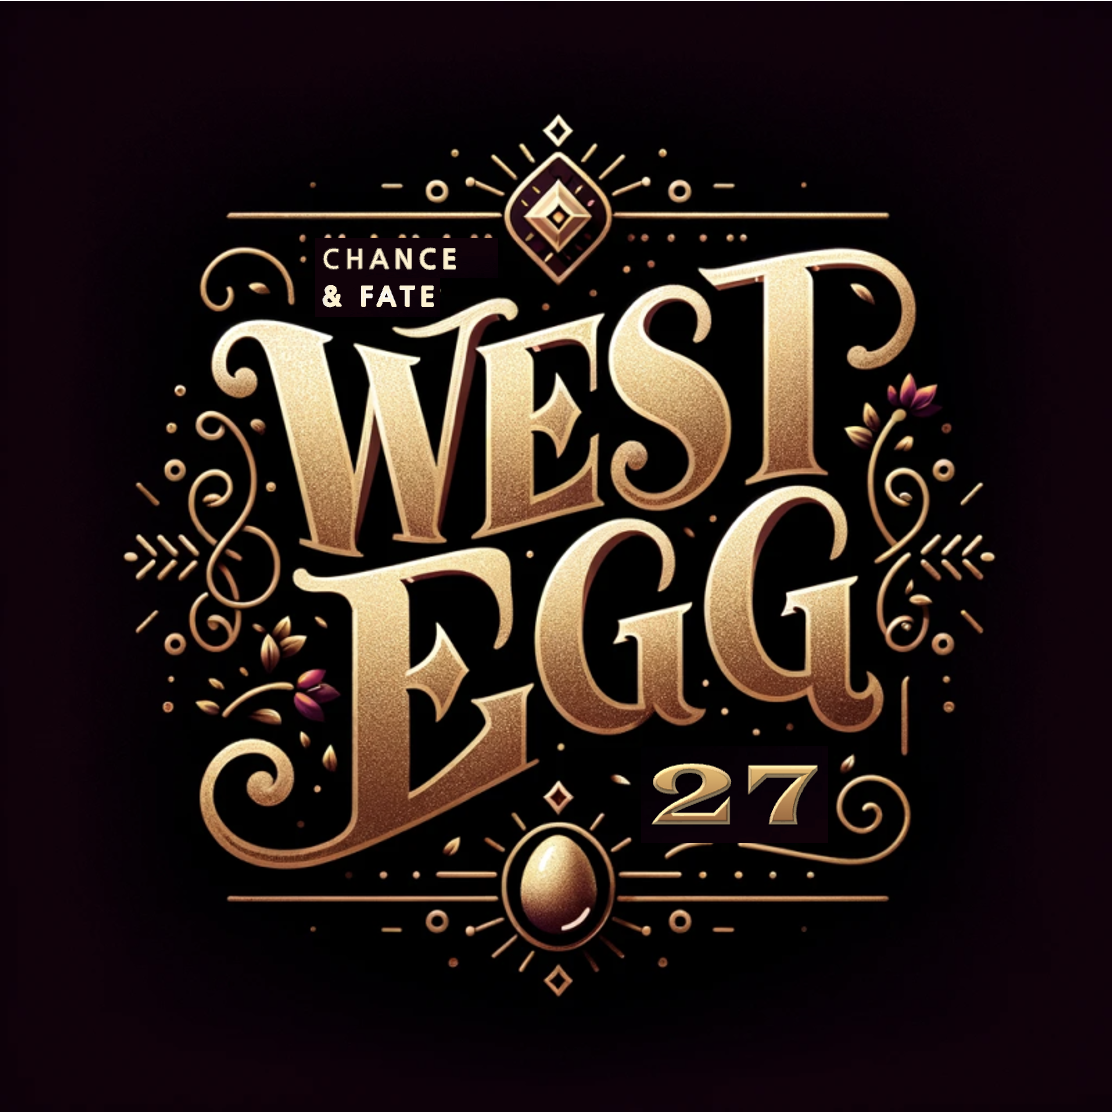 West egg 27